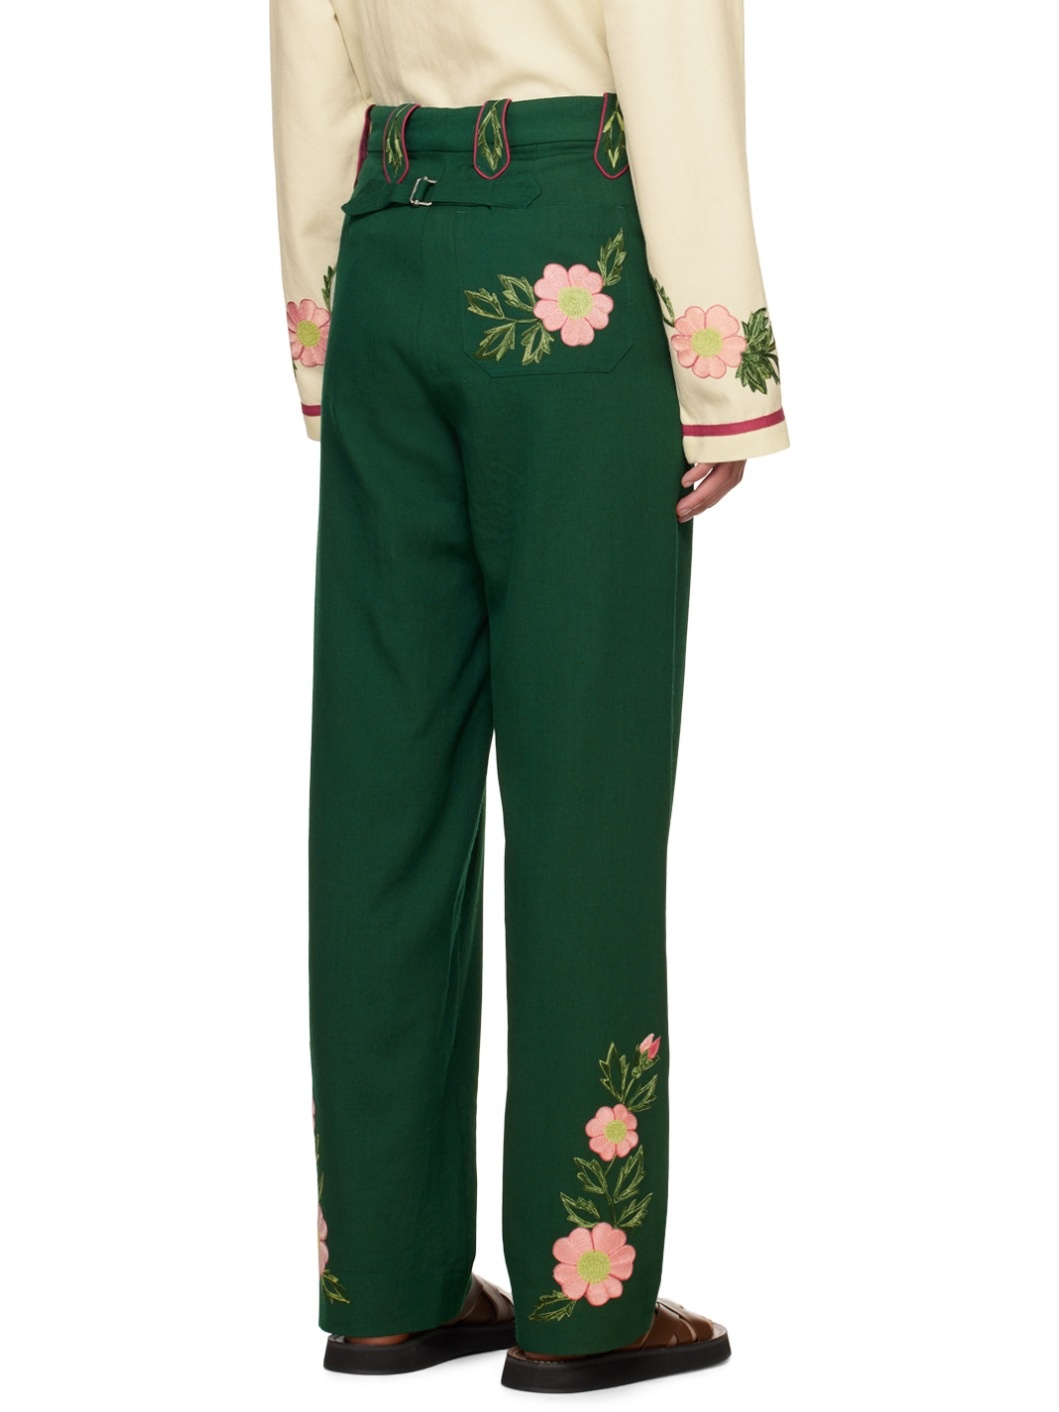 Green Prairie Rose Trousers - 3